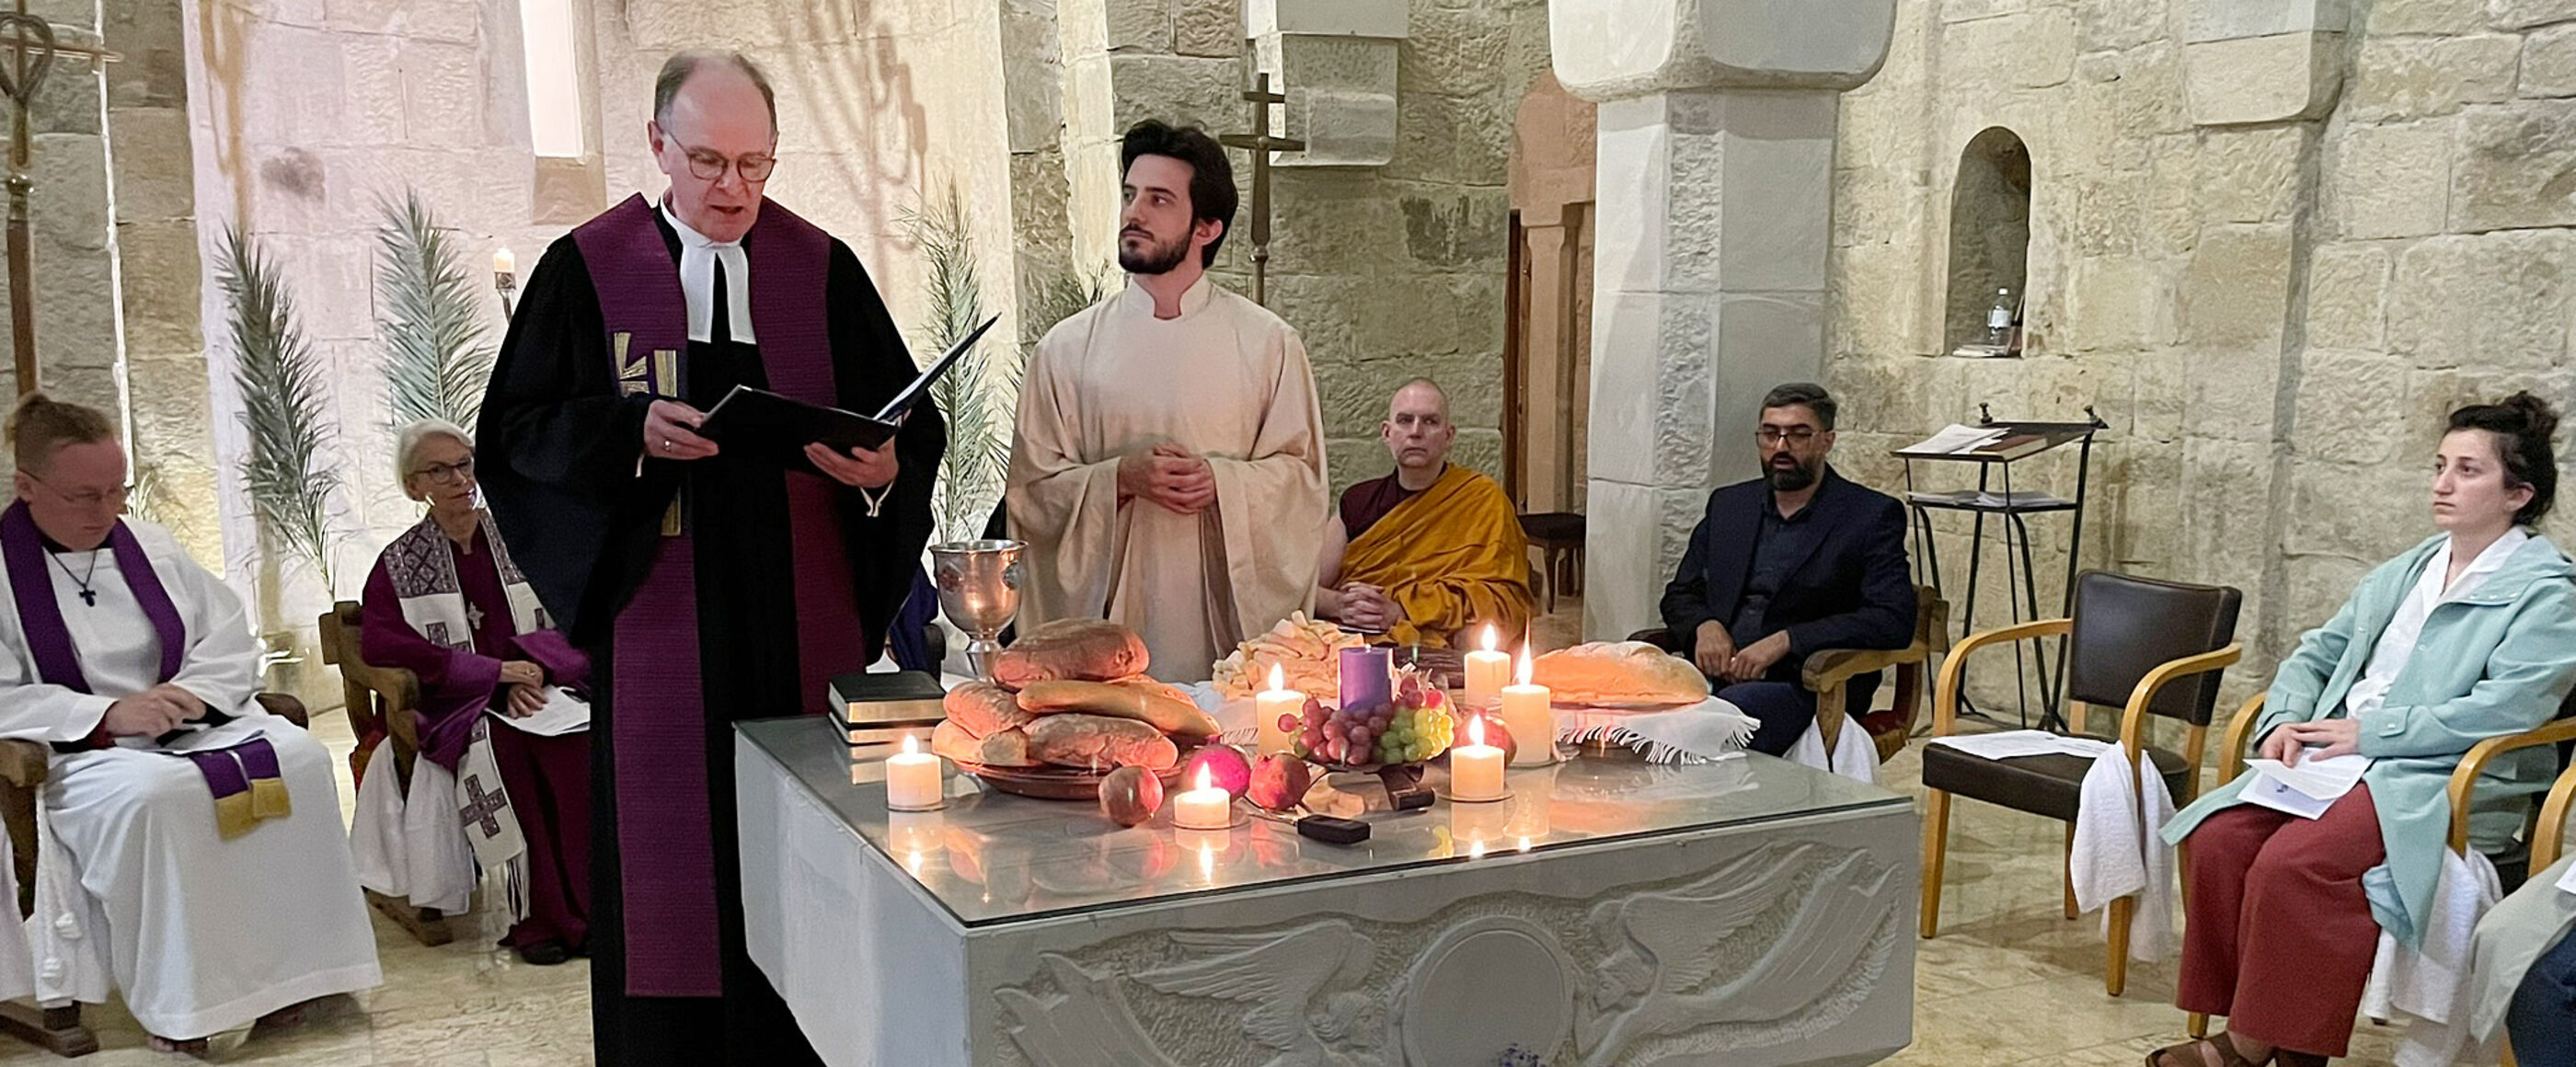 Ein Mann im Talar und ein Mann im weißen Gewand stehen hinter einem Altar, auf dem Kerzen, Brote und ein Kelch stehen.